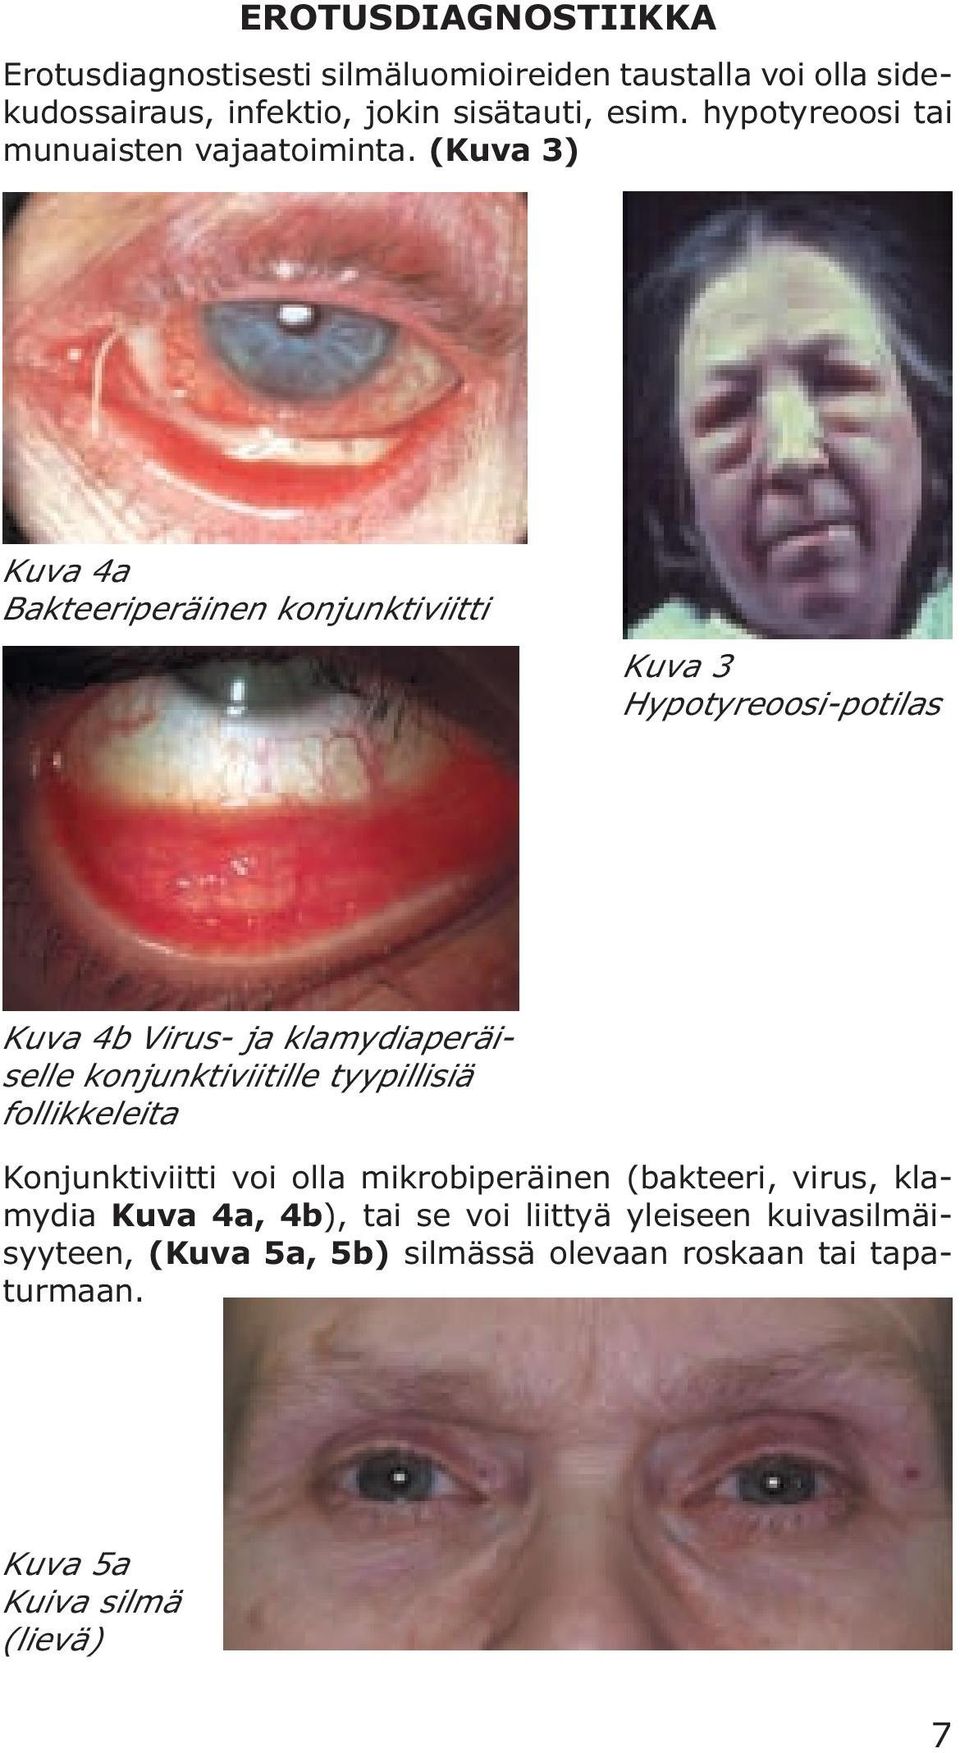 (Kuva 3) Kuva 4a Bakteeriperäinen konjunktiviitti Kuva 3 Hypotyreoosi-potilas Kuva 4b Virus- ja klamydiaperäiselle konjunktiviitille